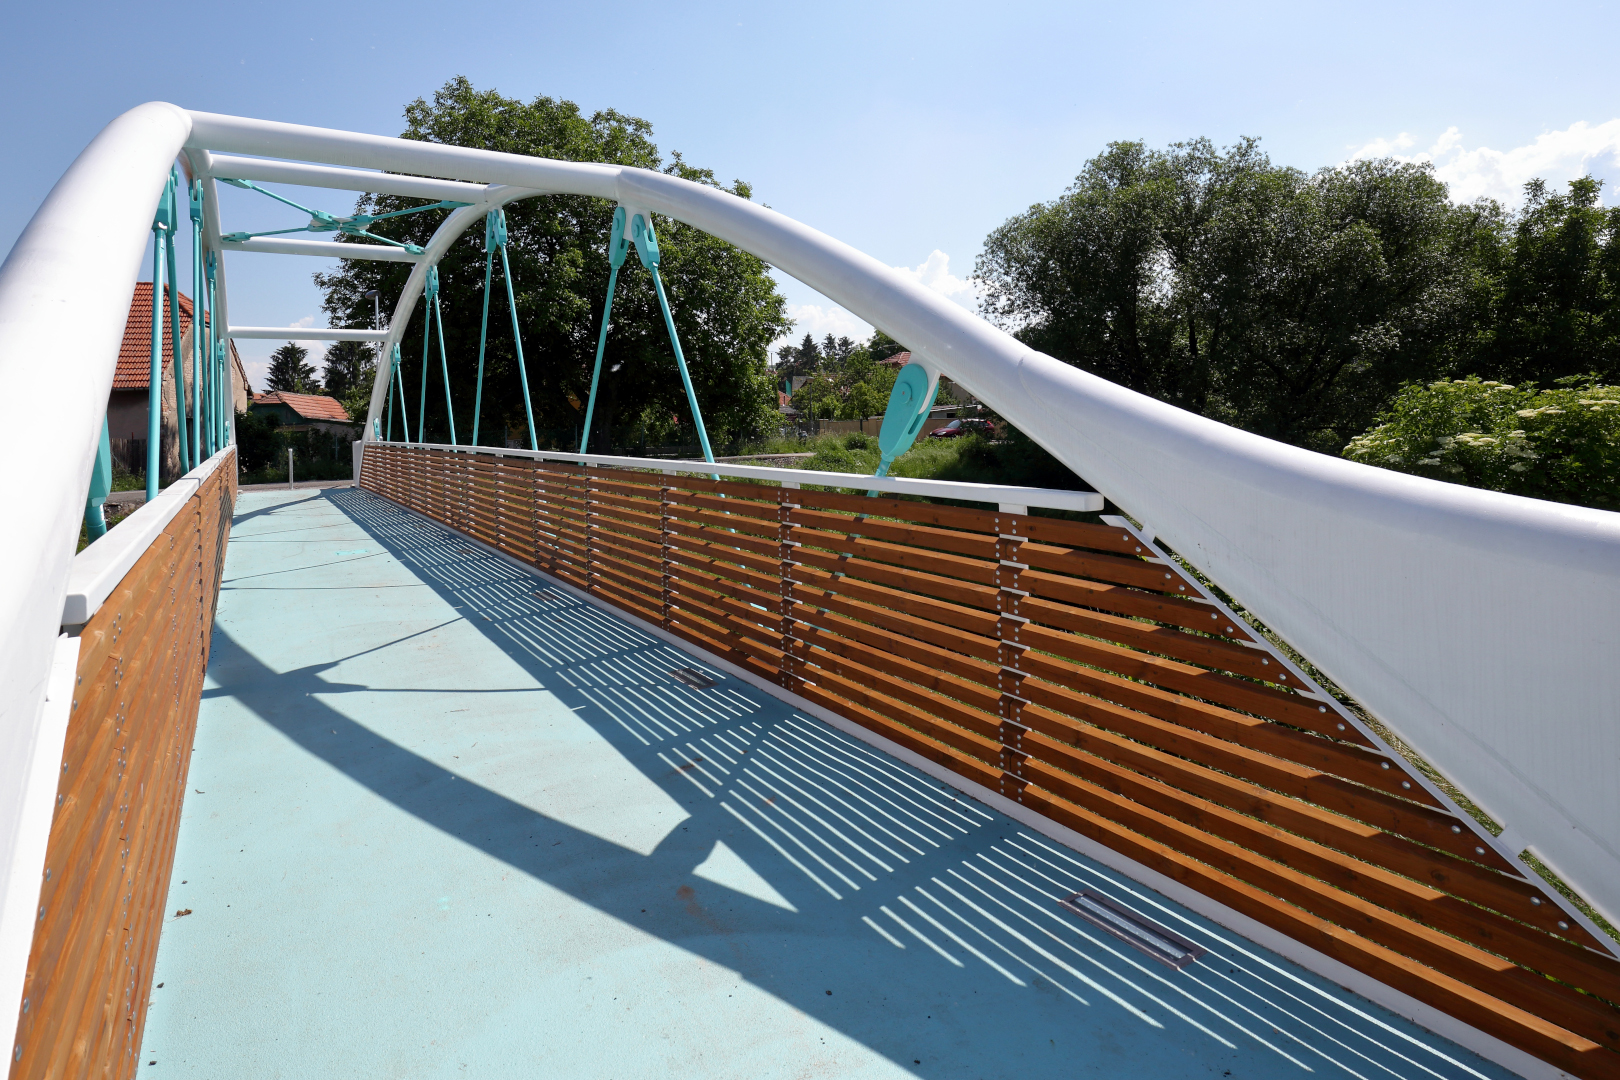 Radim – stavba lávky pro pěší a cyklisty přes řeku Výrovku - Út- és hídépítés